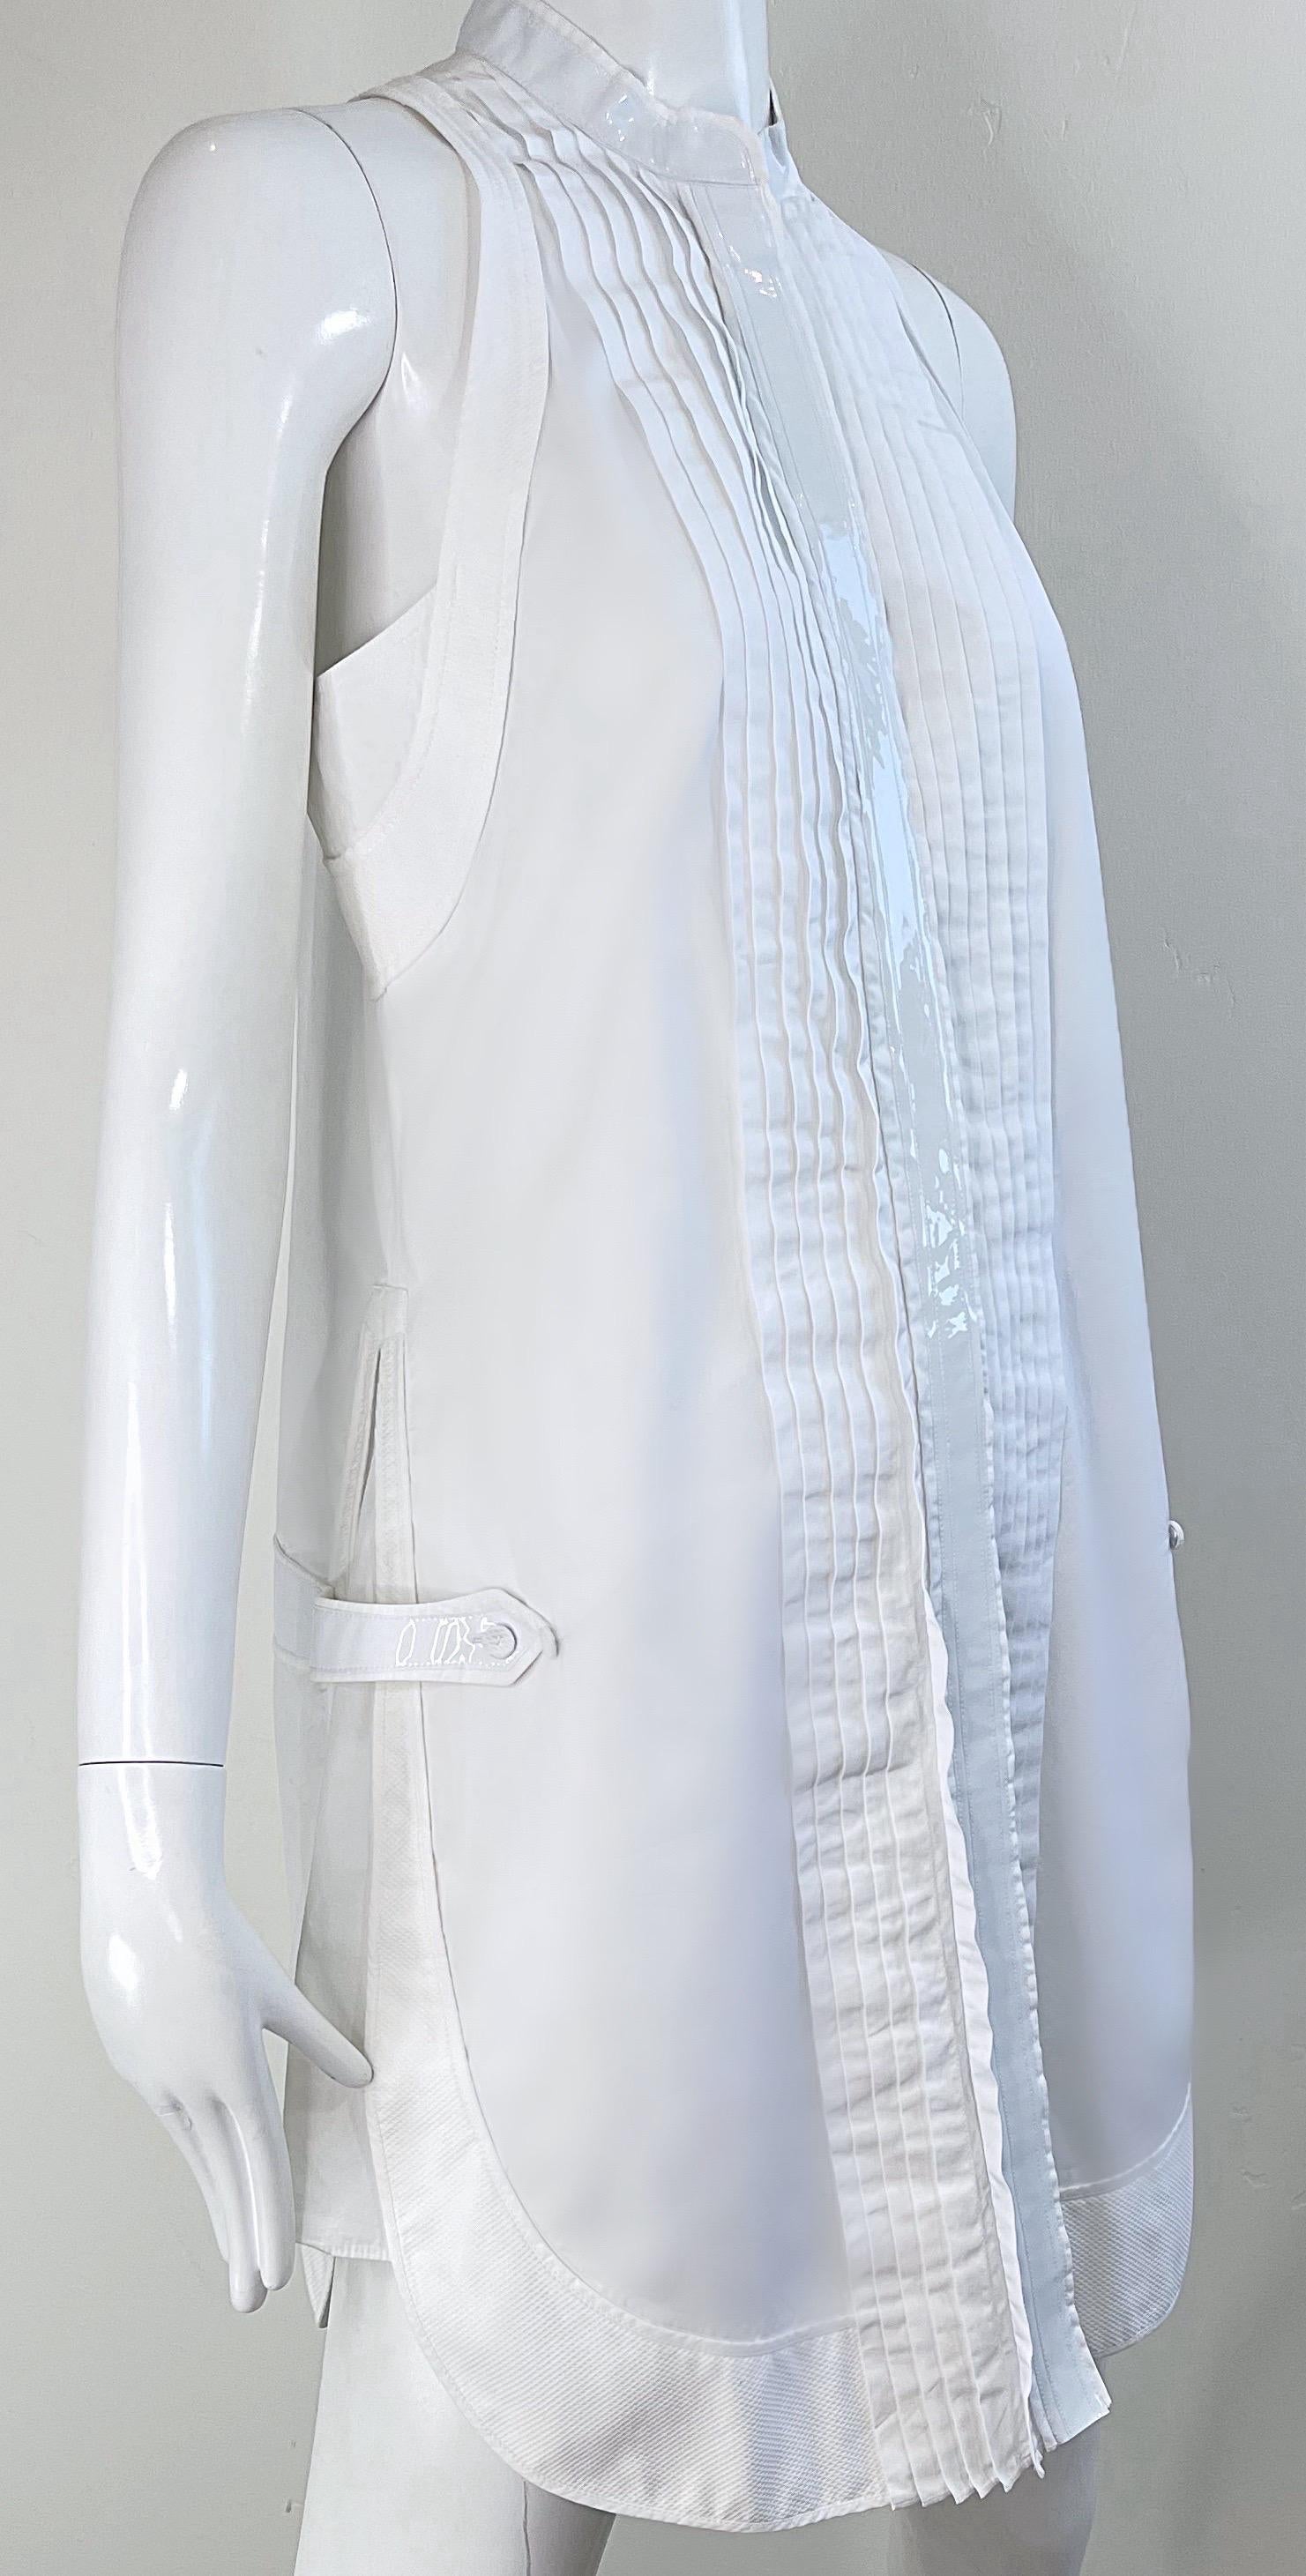 Balenciaga Spring 2007 by Nicolas Ghesquiere Size 38 / 8 White Tuxedo Dress  For Sale 9